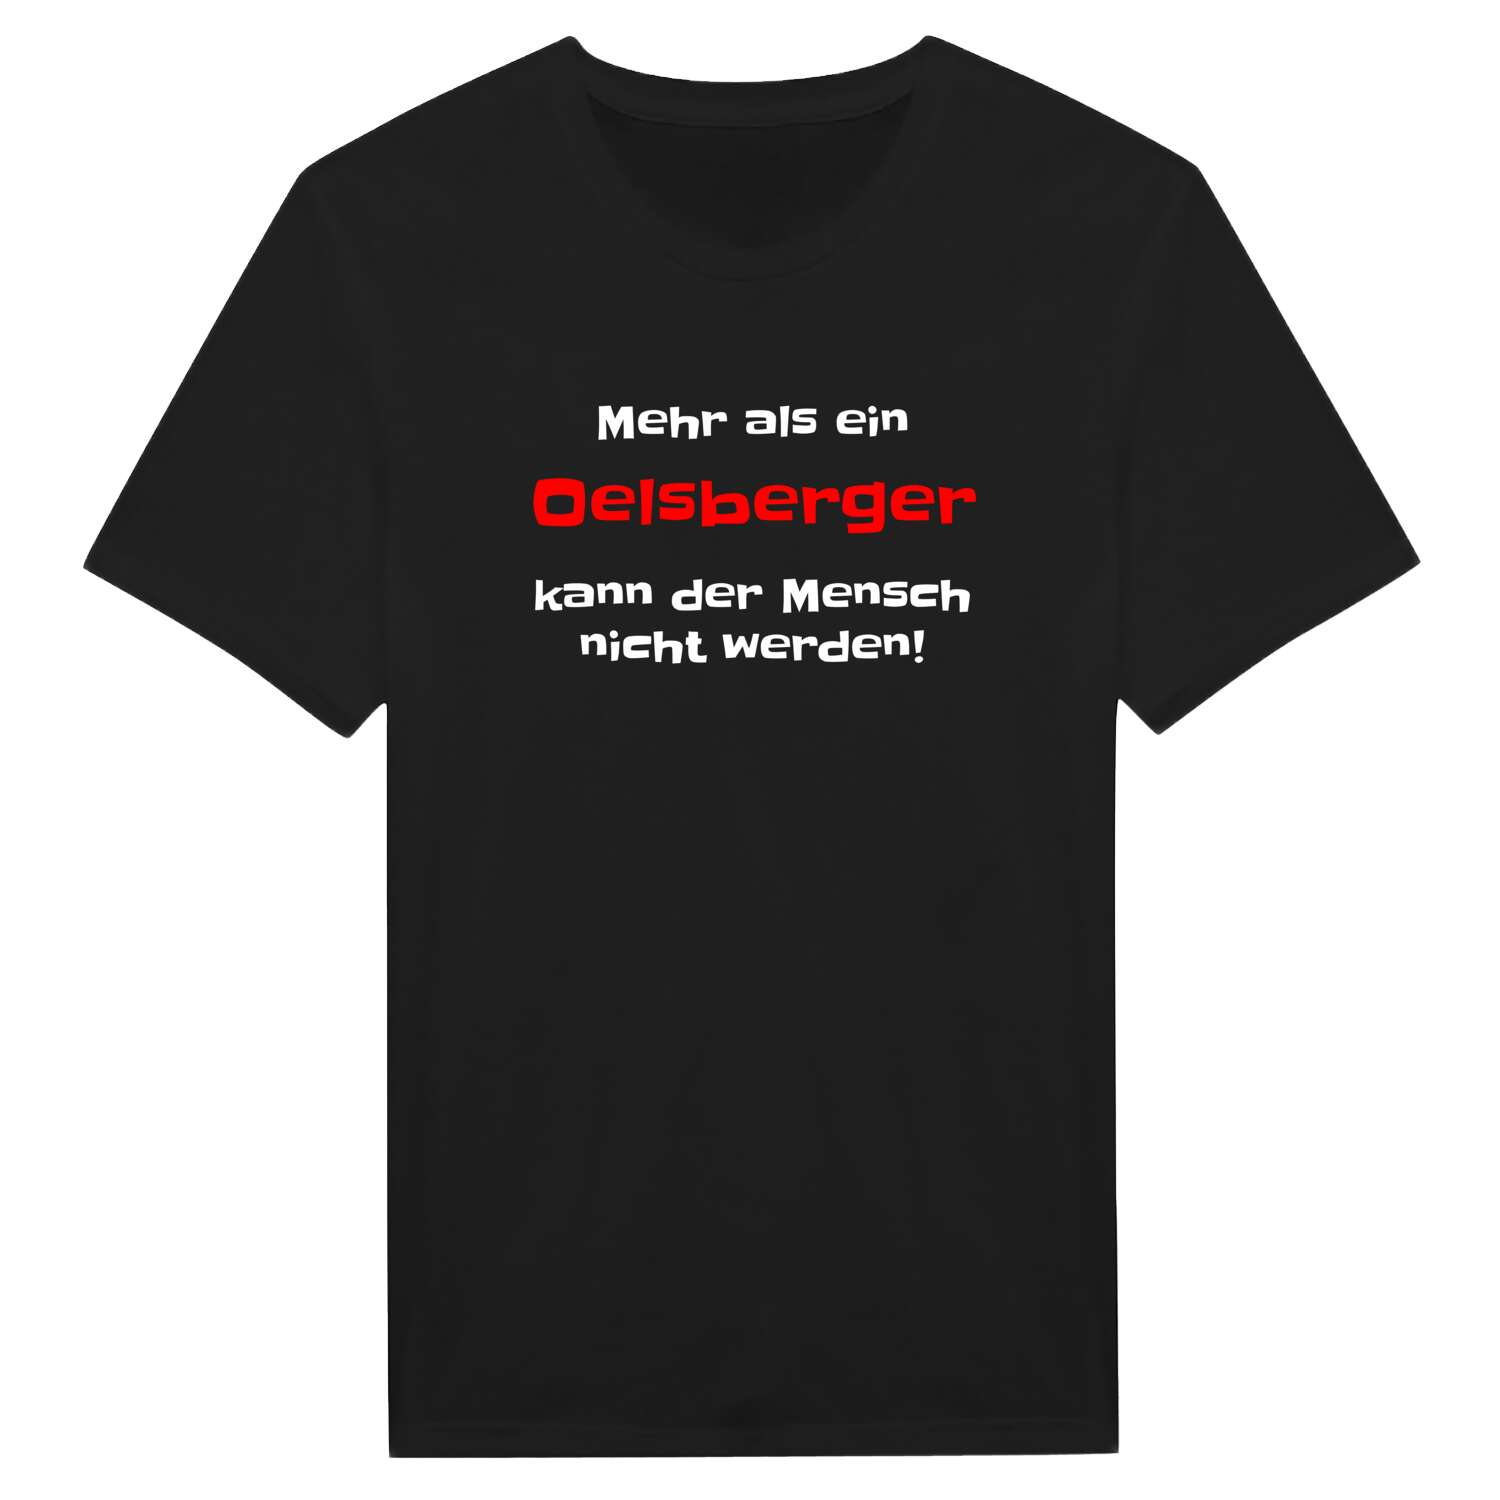 Oelsberg T-Shirt »Mehr als ein«